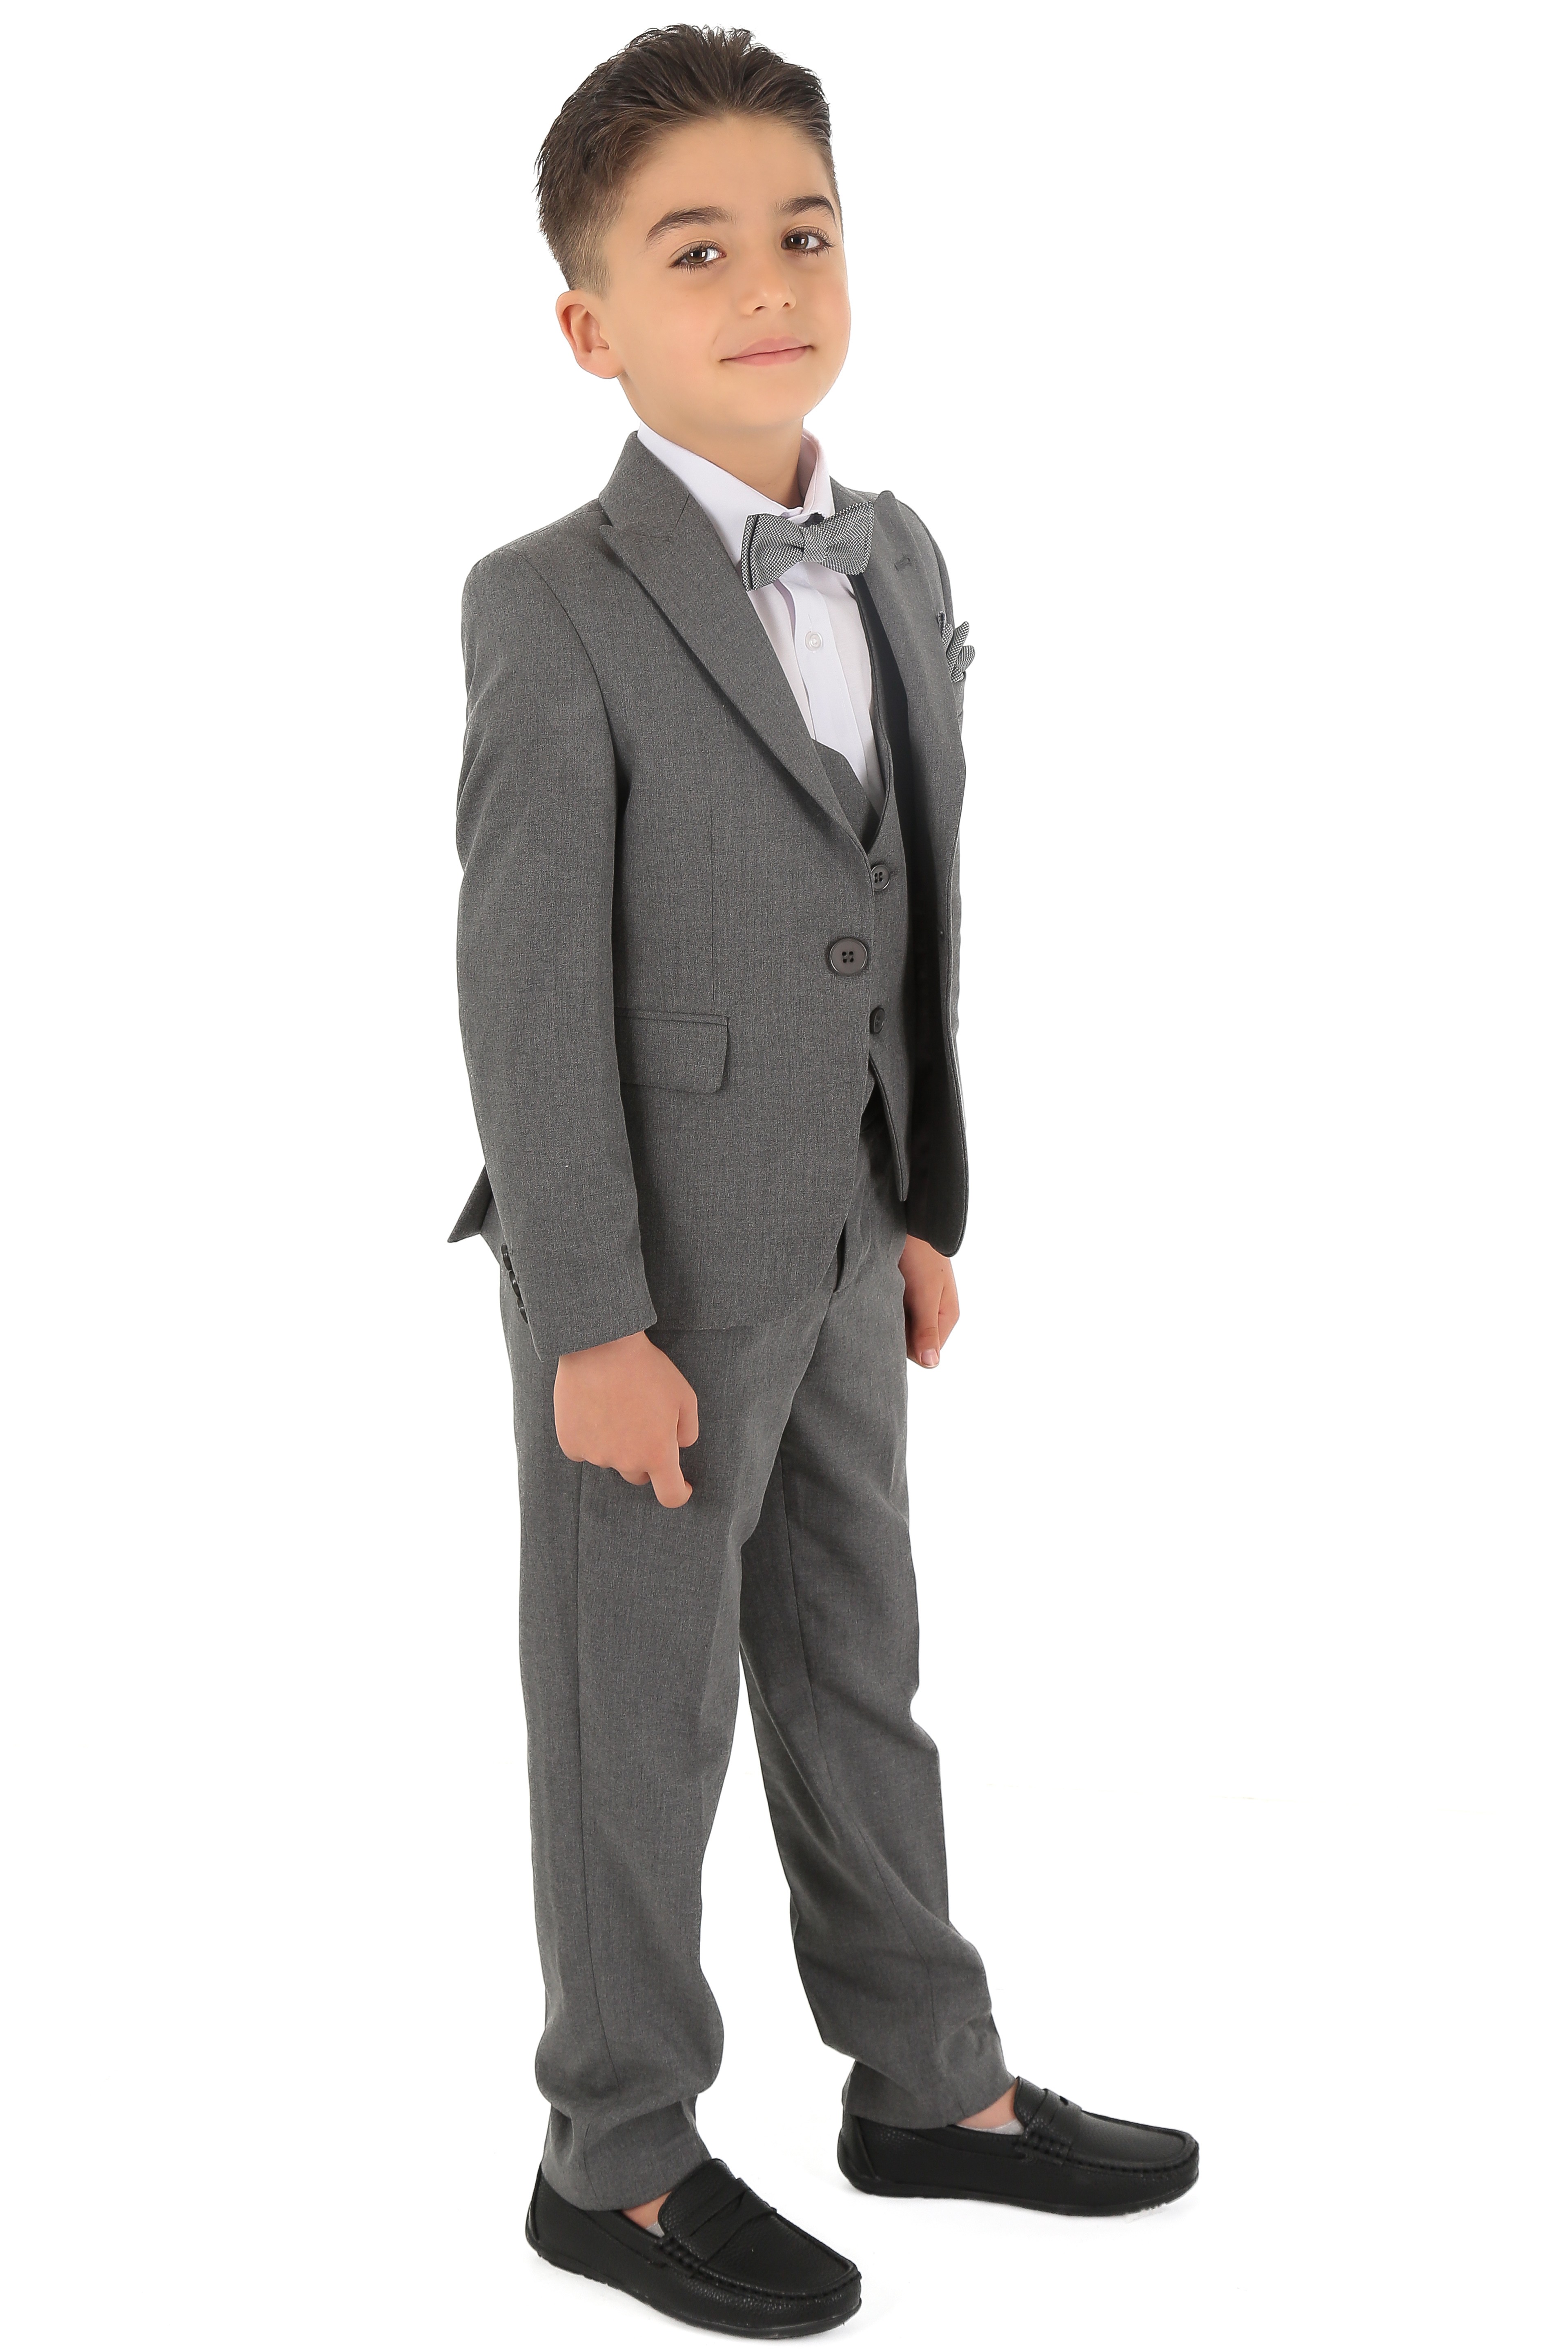 1-15 Yaş Erkek Çocuk King Özel Tasarım Takım Elbise 6 Parça - Gri